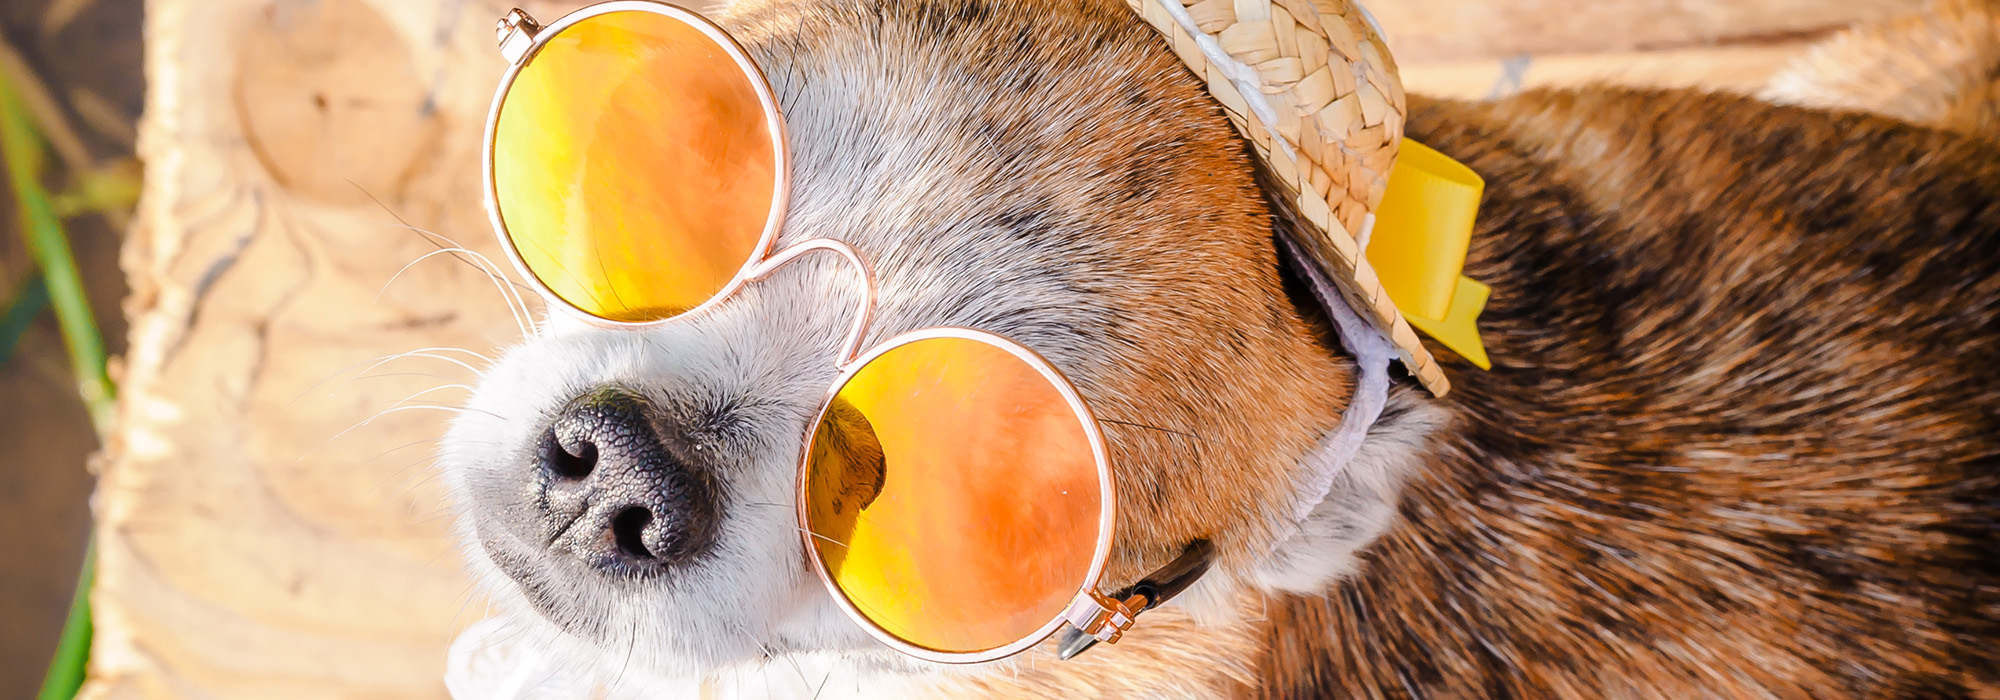 Un chihuahua porte des lunettes de soleil